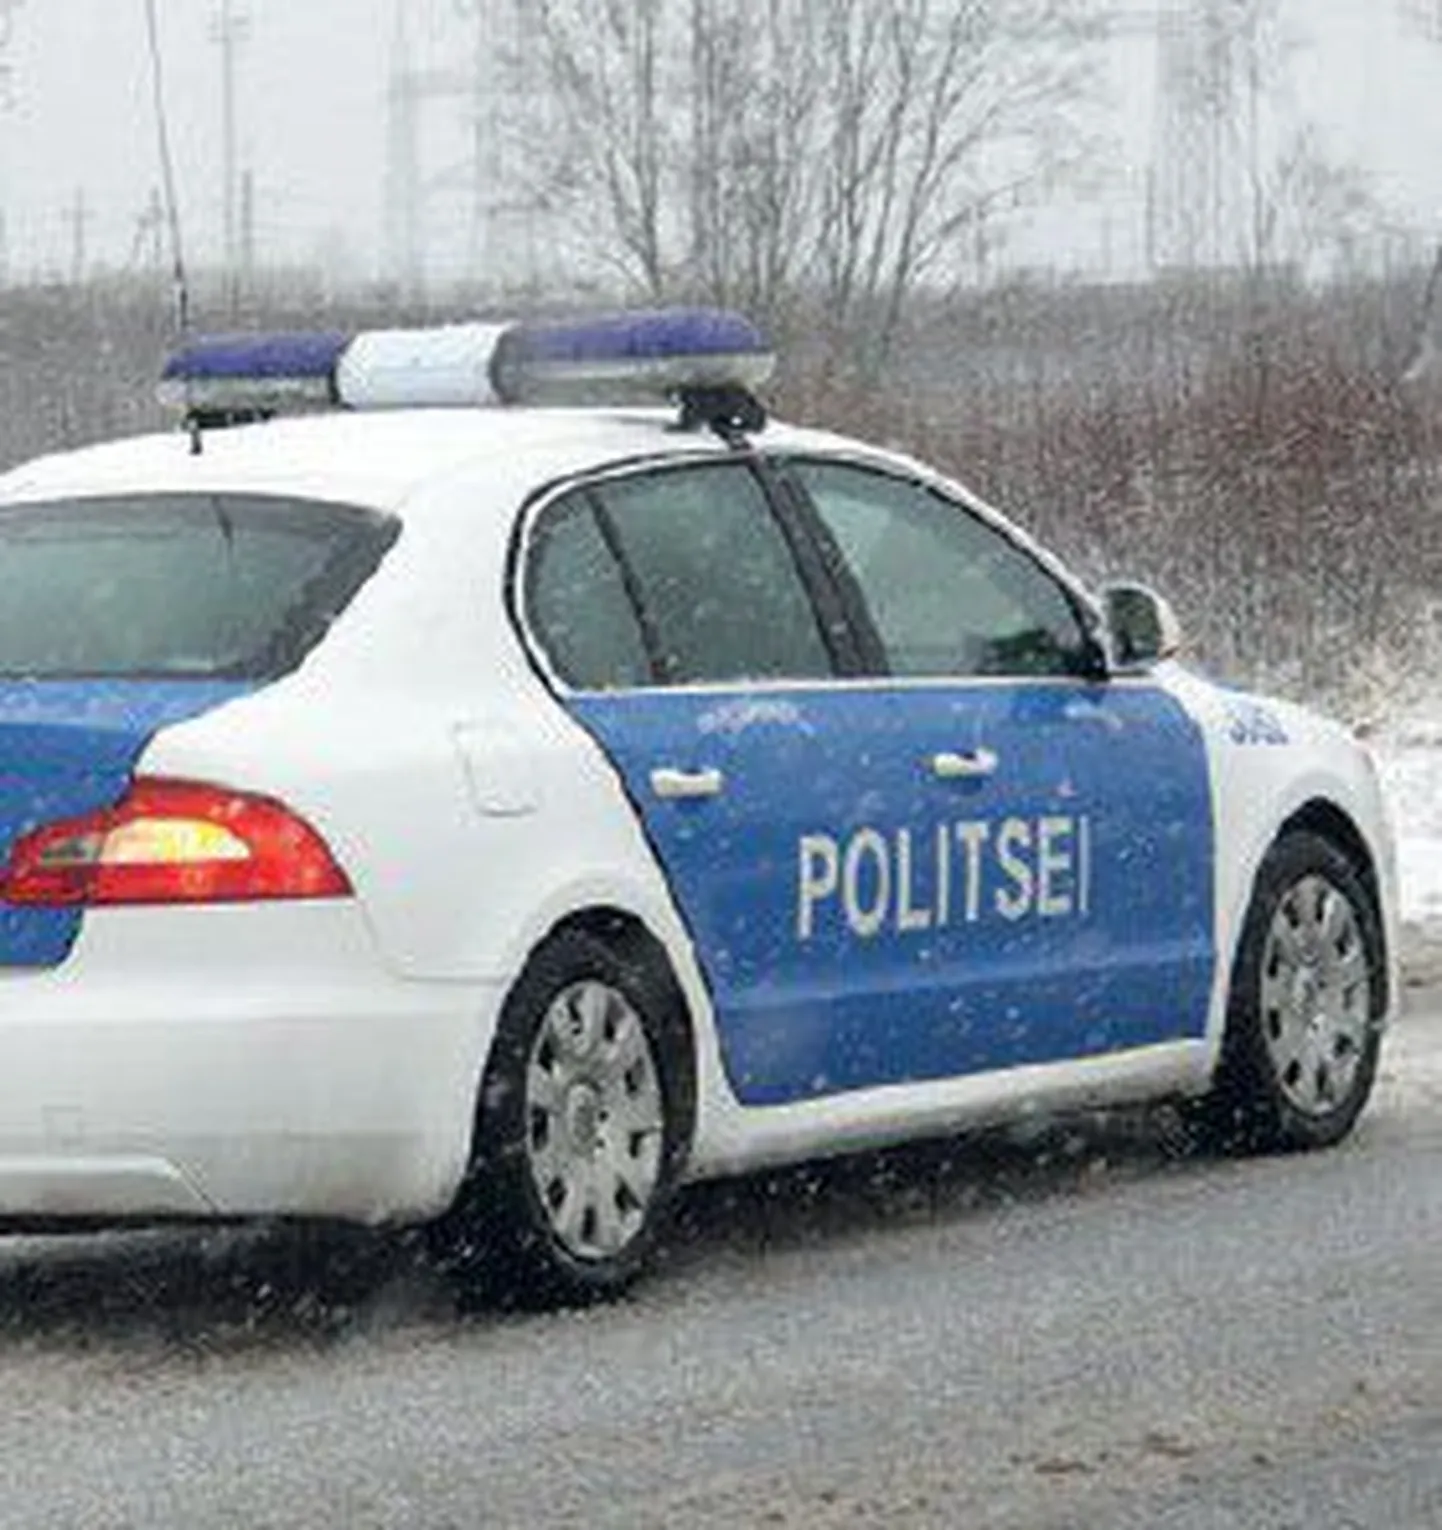 Зимой, когда дорожные условия становятся сложнее, работы у полиции прибавляется.